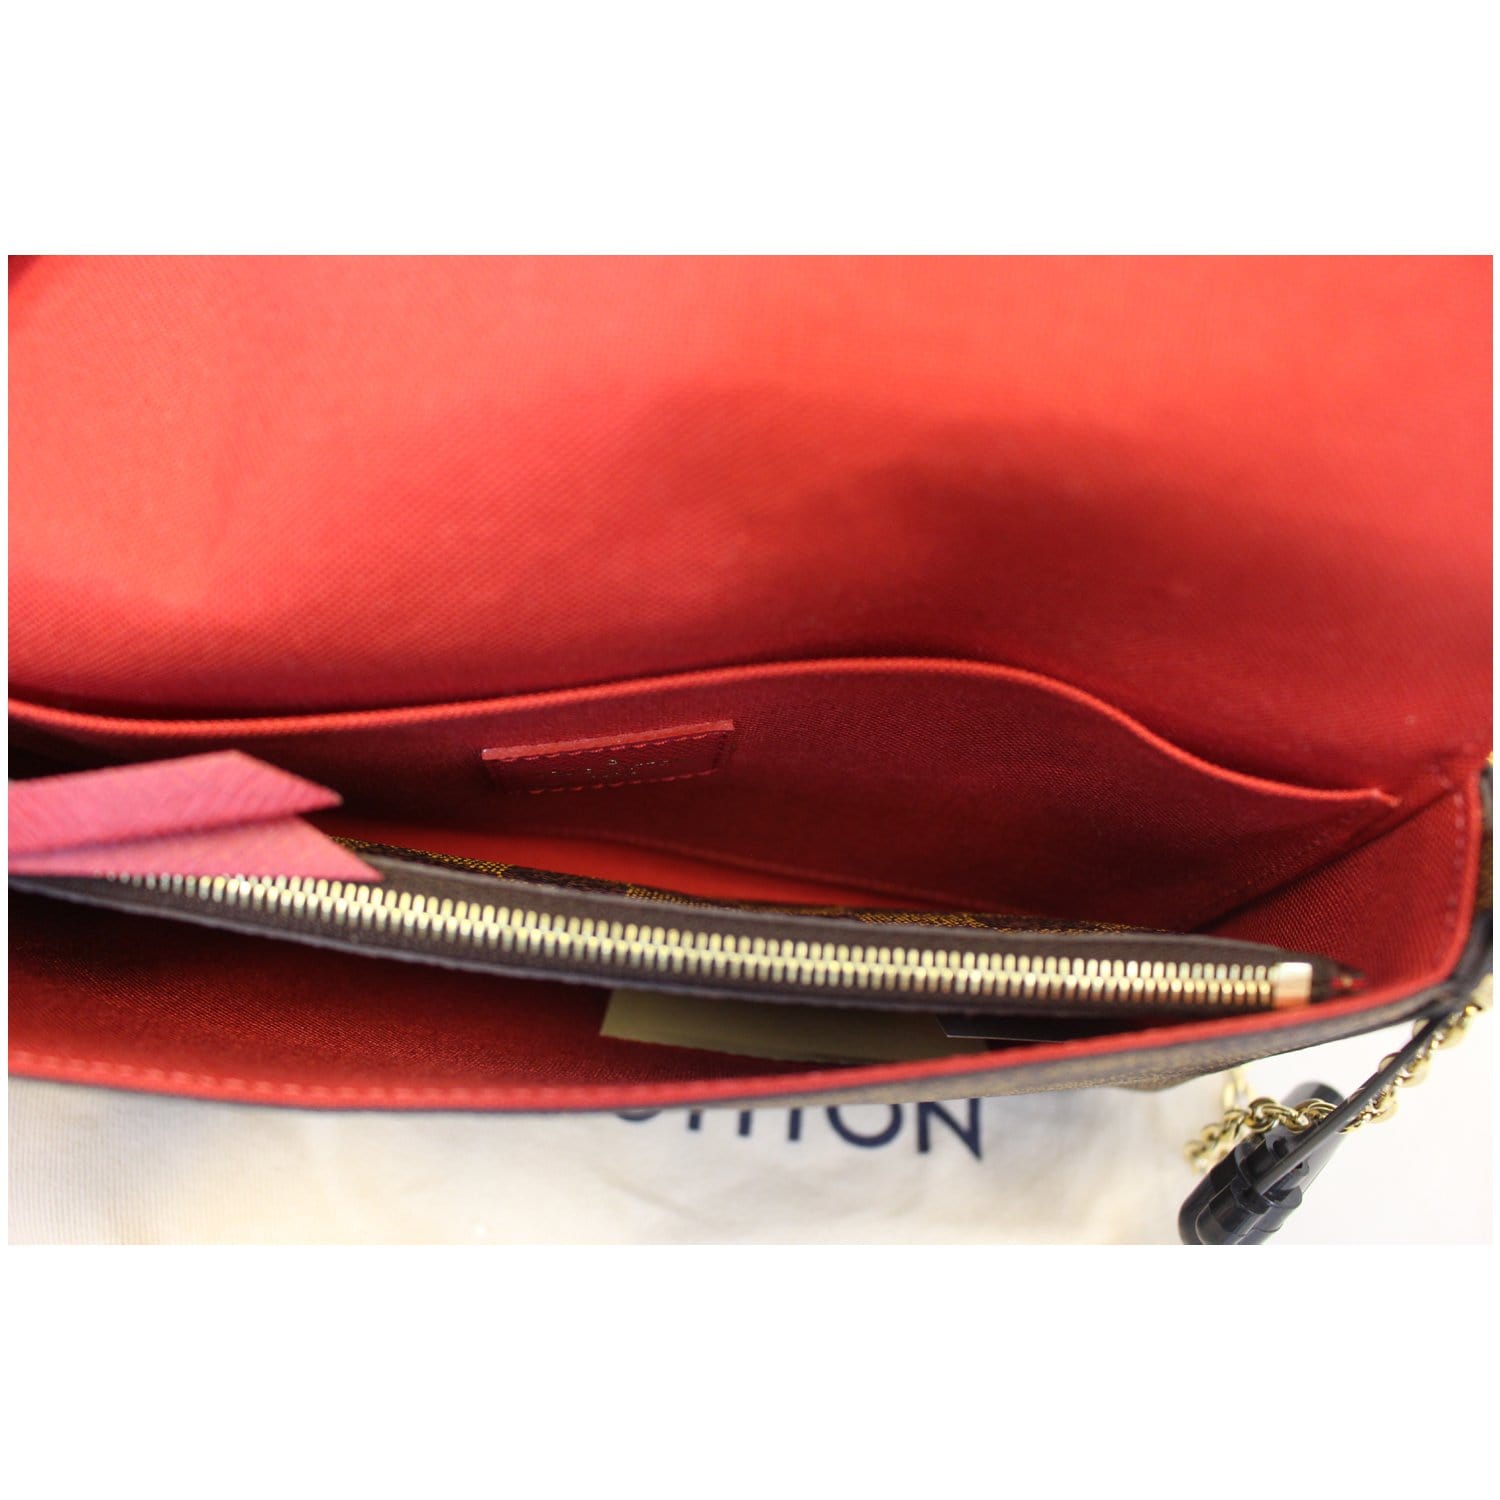 Louis Vuitton Damier Ebene Felicie Crossbody Bag